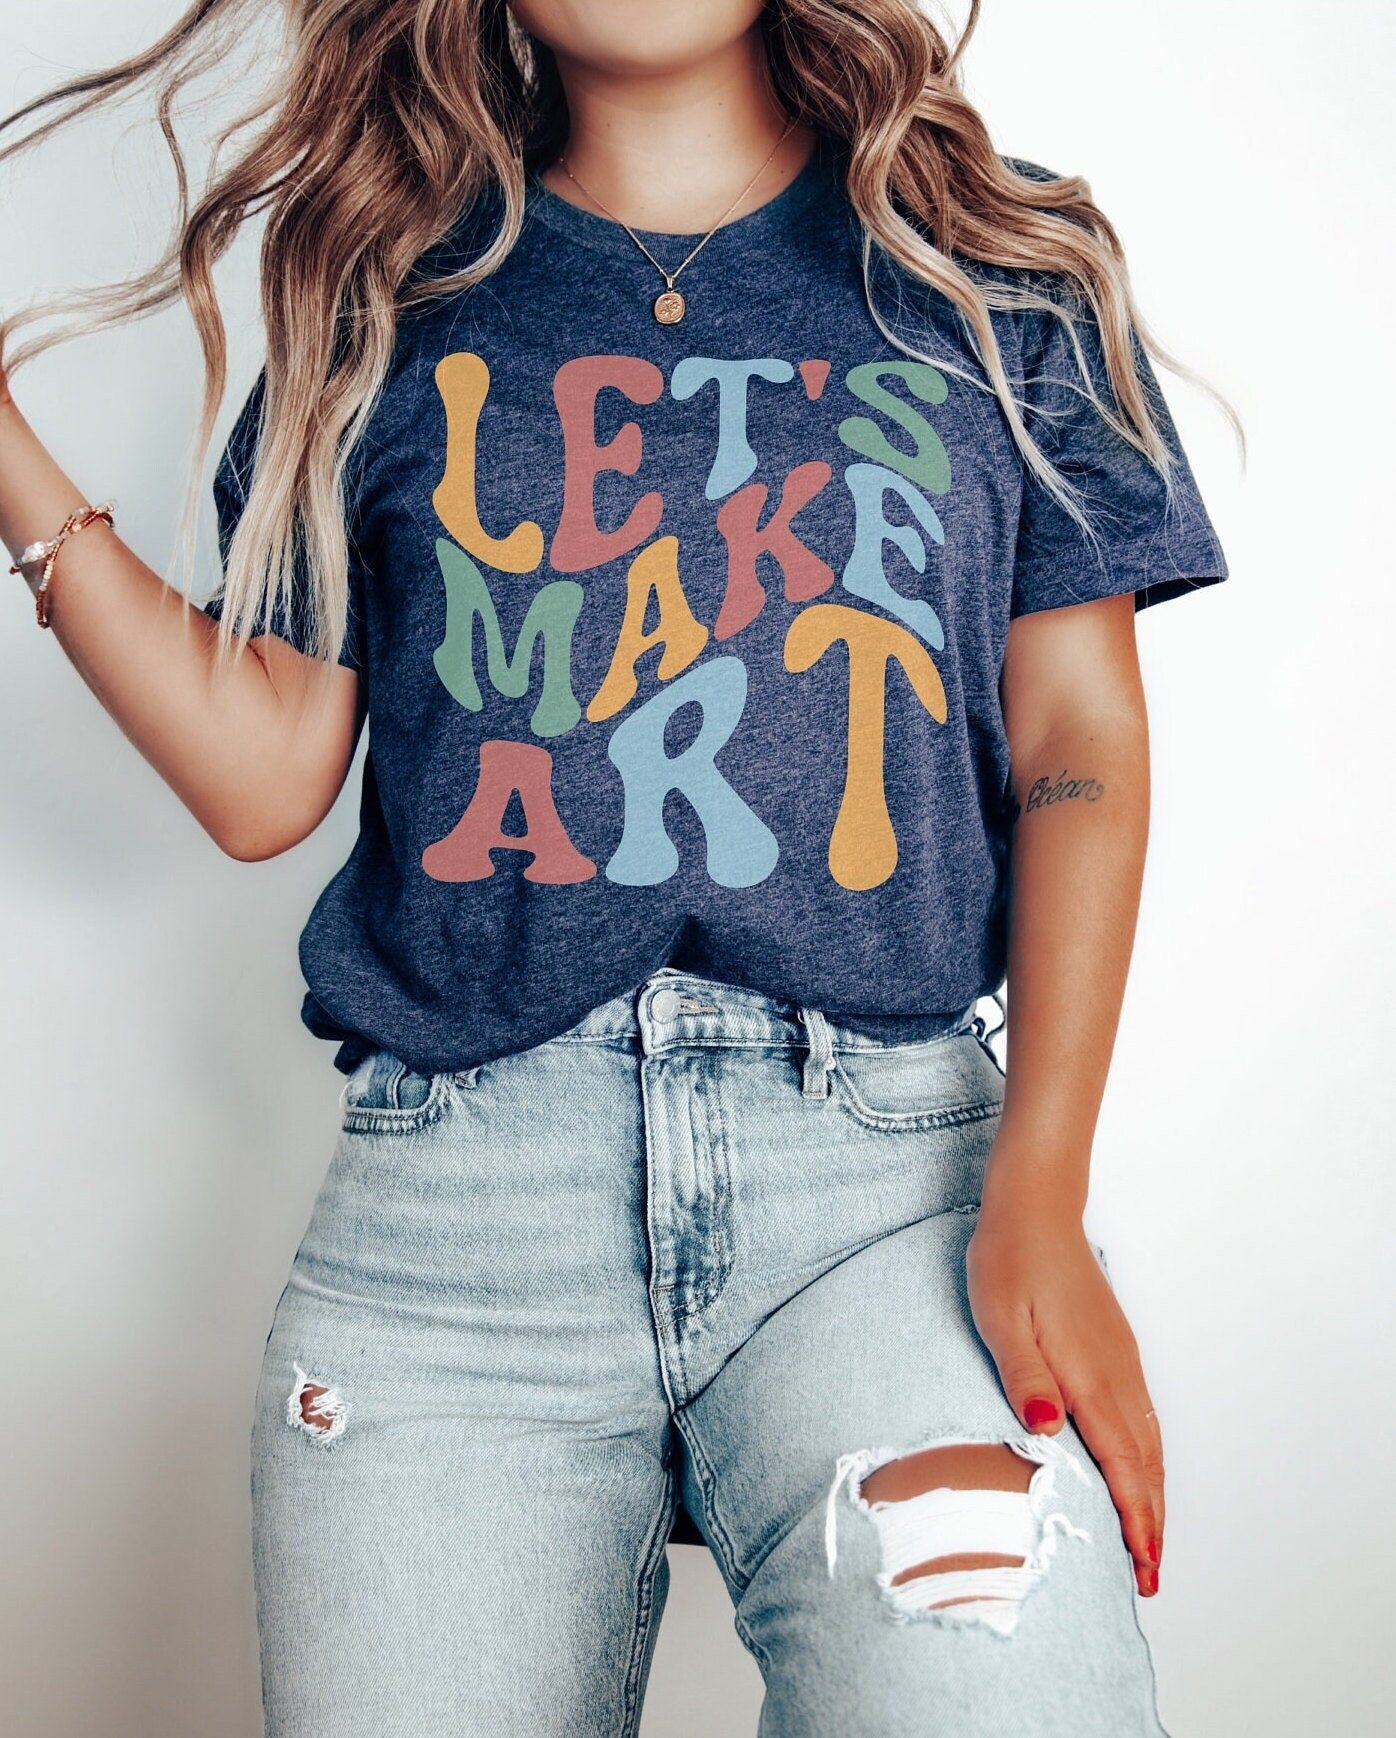 Lets Make Art, Art Teacher Shirt, Gift for Art Teacher, Art Teacher Tshirt, Art Teacher Gift, Art Teacher Tee, Art Shirt, Custom Art Teacher